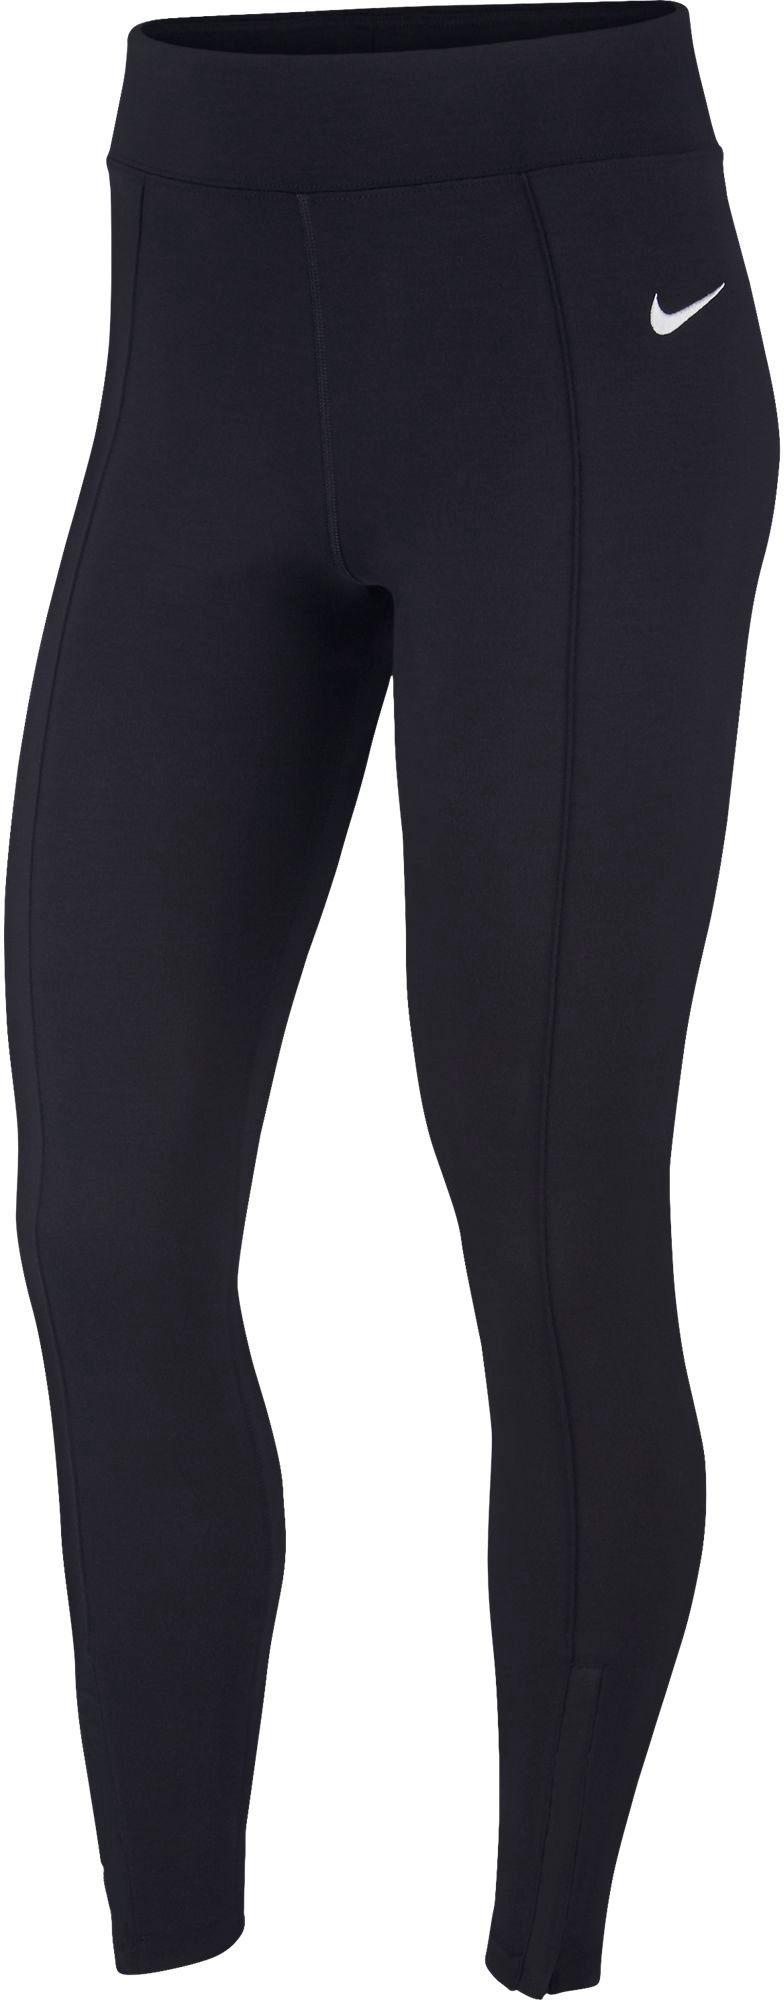 Nike Sportswear Leg-a-see Zip Leggings, Plain Pattern in Black - Lyst